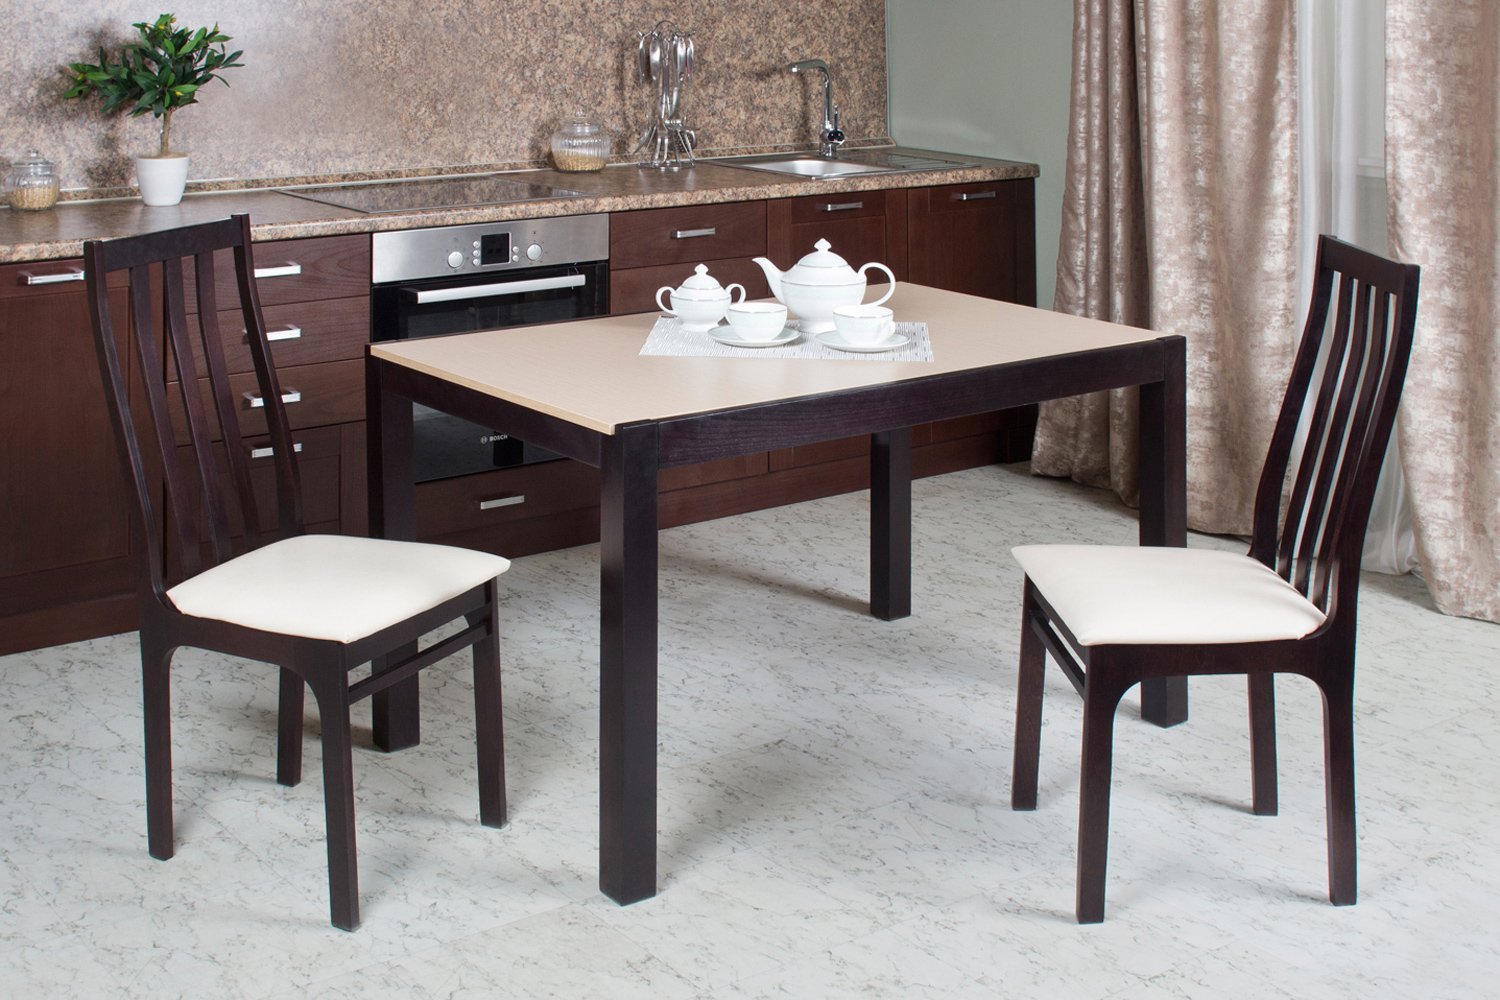 Стол кухонный коричневый. Стол венге хофф. Хофф столы обеденные. ГС Е ср (ДБЗ) стол обеденный ( 764*1940-2390*1090 ) ш/ш. Столы и стулья для кухни.